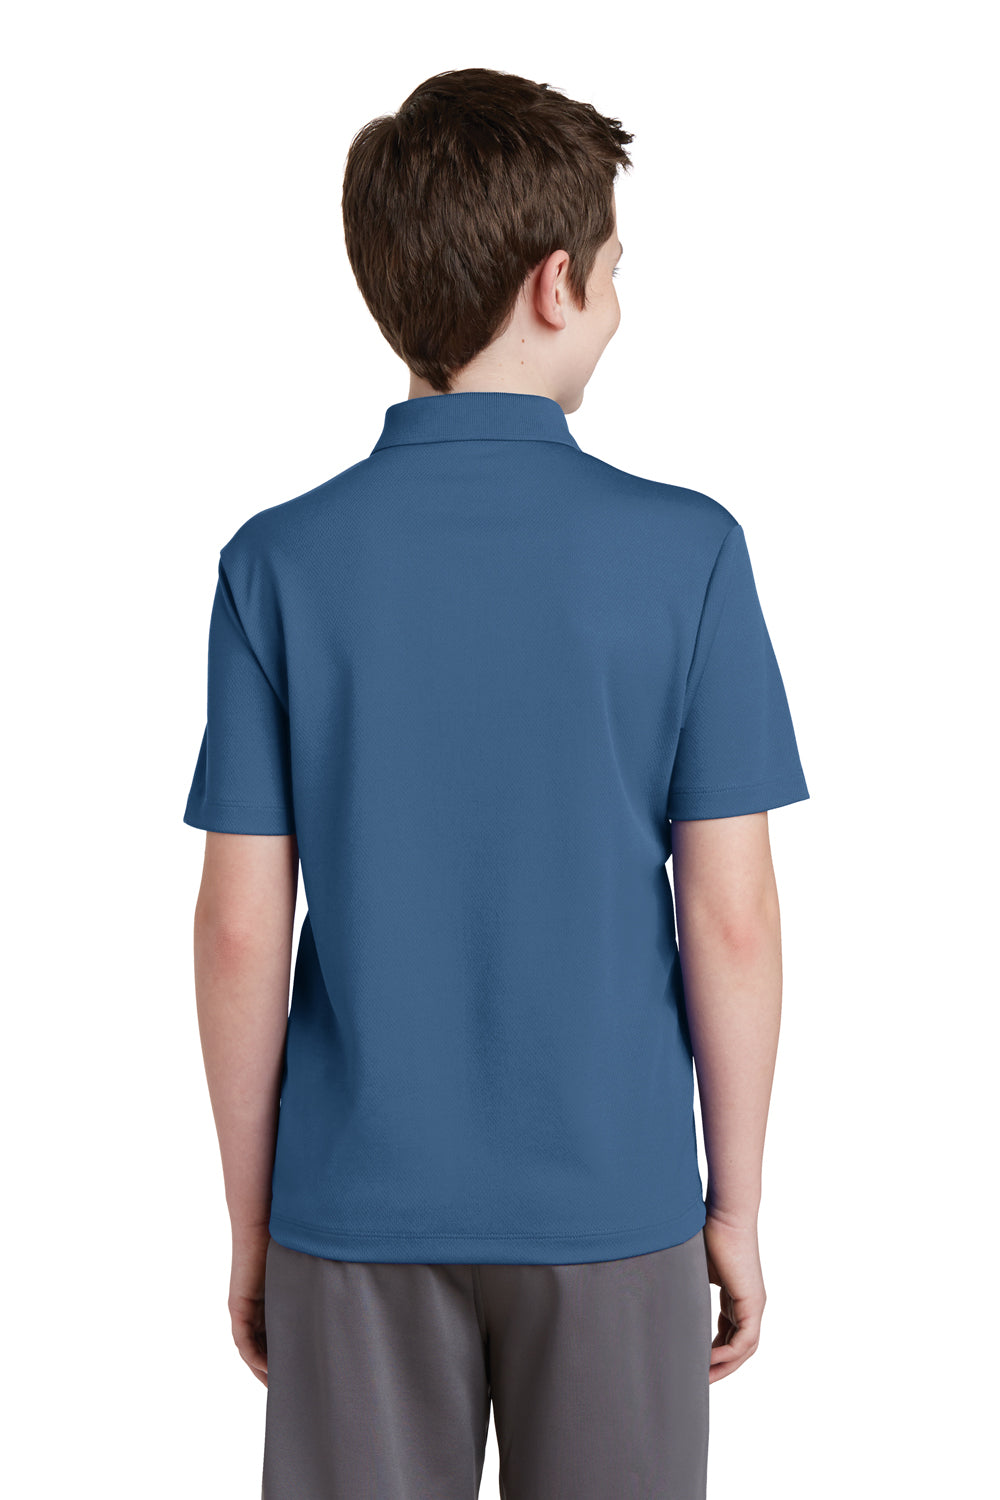 Sport-Tek YST640 Youth RacerMesh Moisture Wicking Short Sleeve Polo Shirt Dawn Blue Back